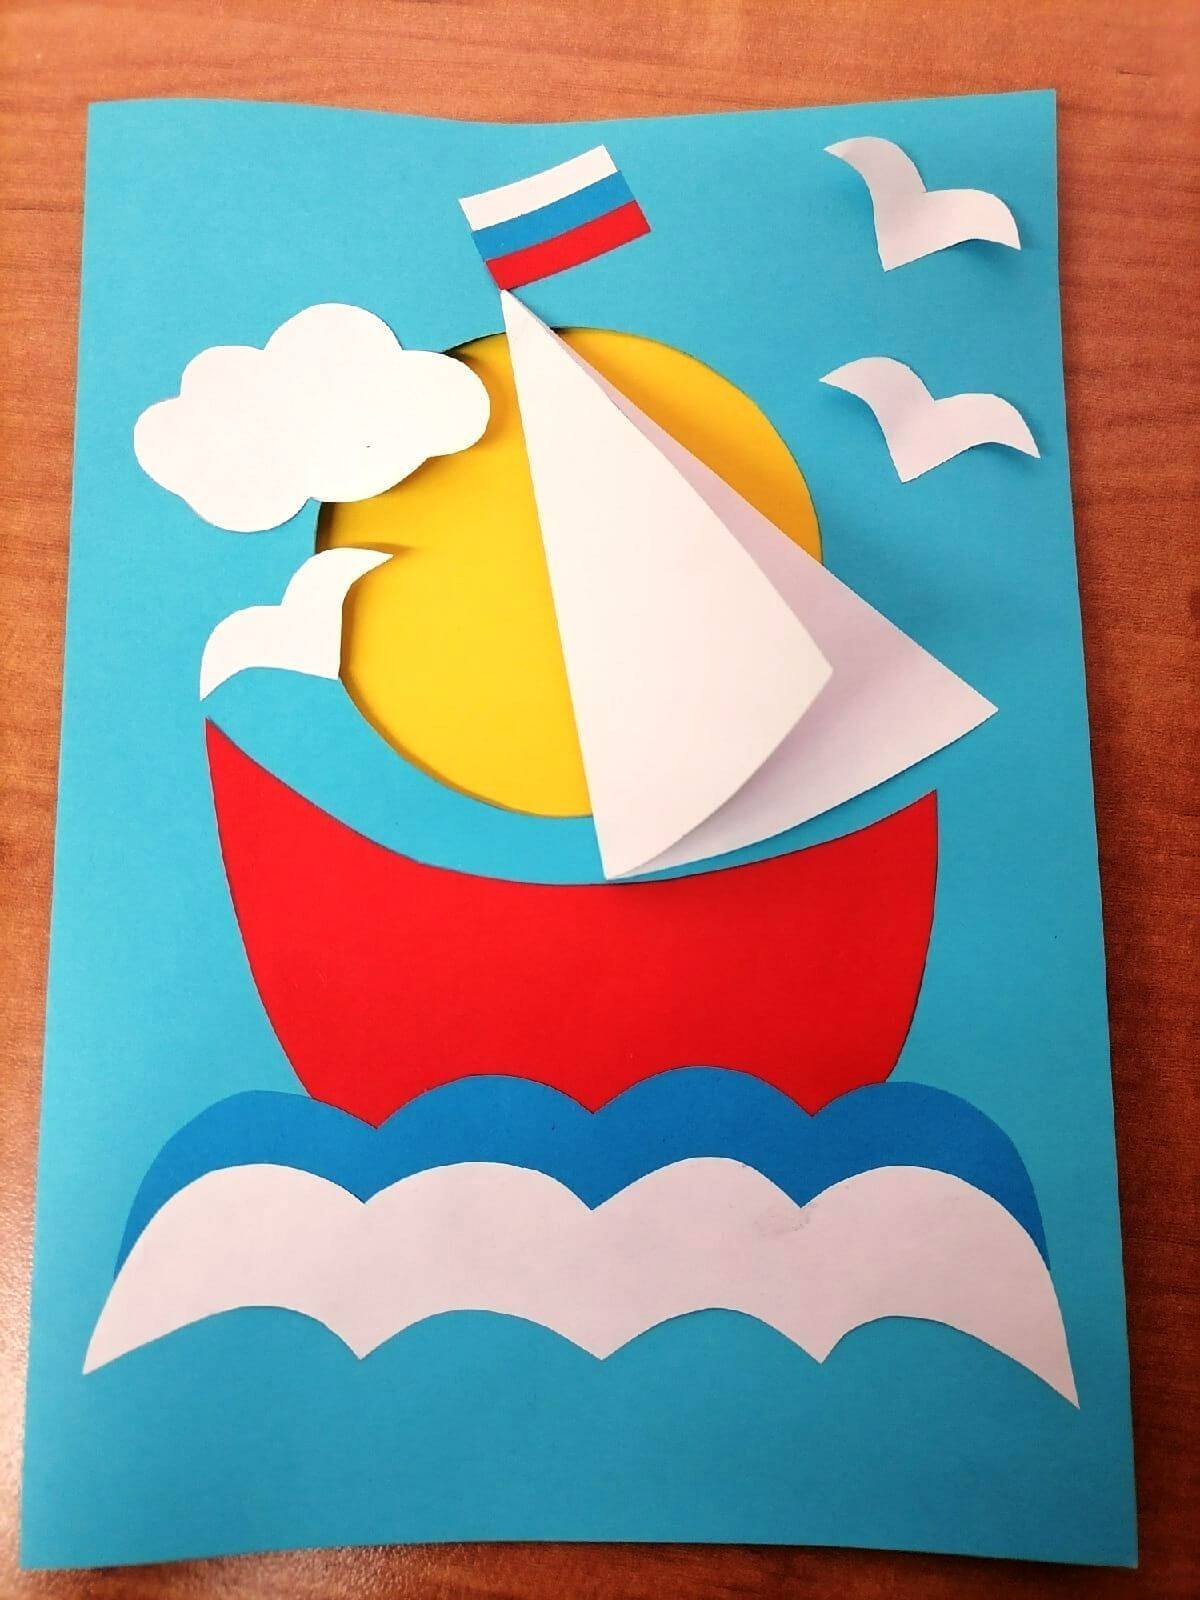 Оригами кораблик Изображения – скачать бесплатно на Freepik